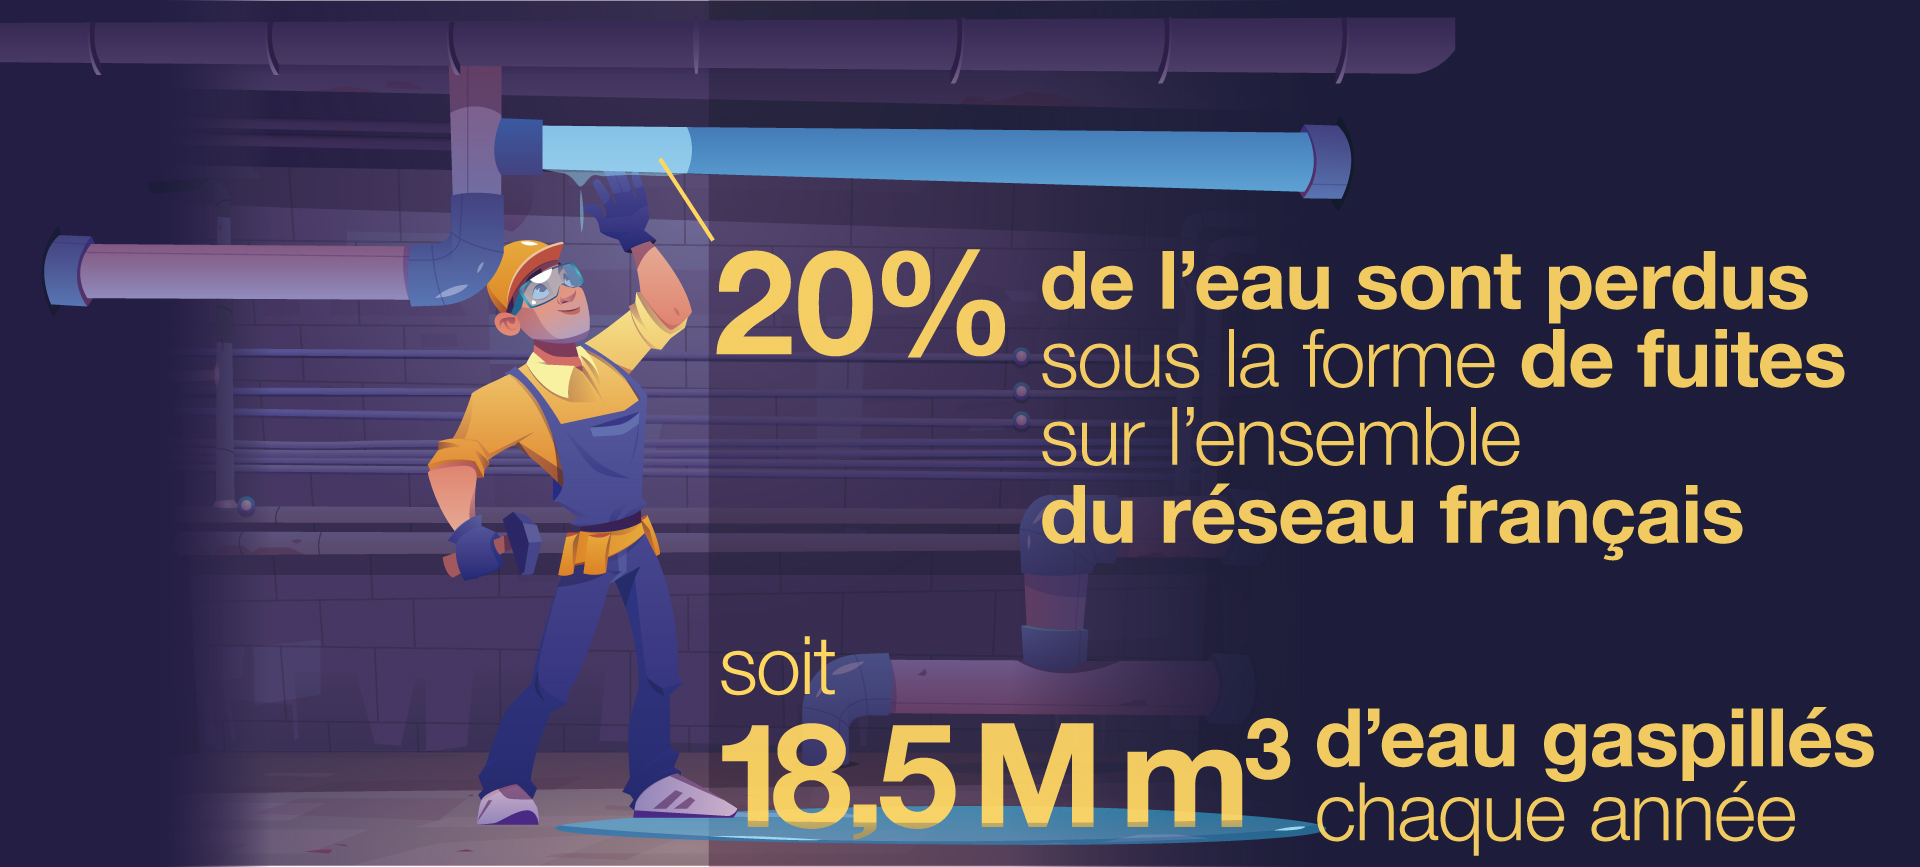 20% de pertes sous la forme de fuites sur l’ensemble du réseau français (soit 18,5 M m3 gaspillés chaque année). 